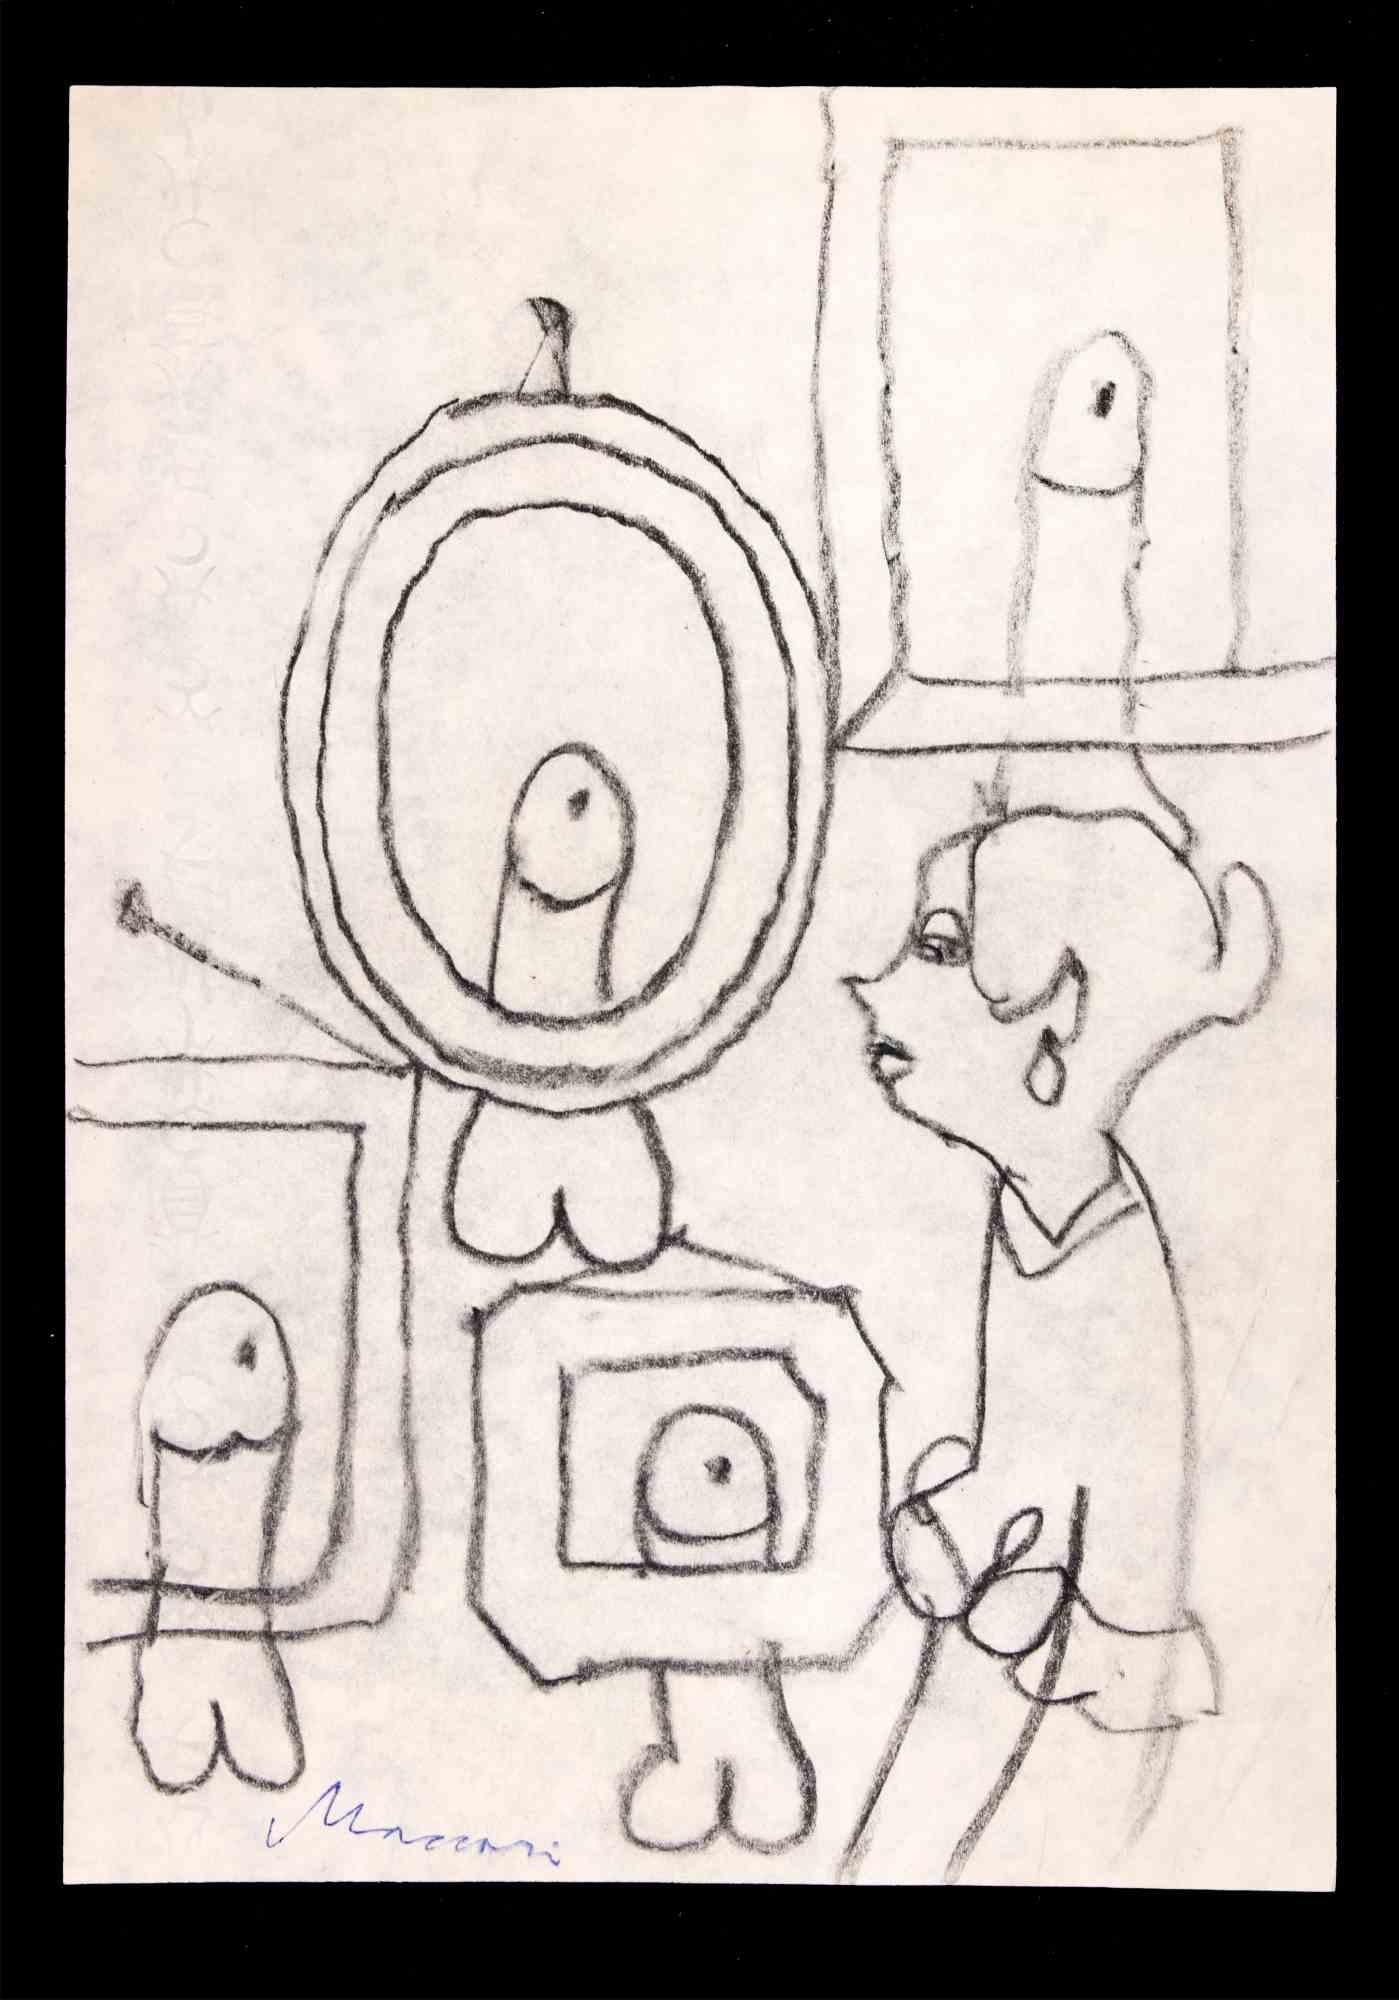 Erotic Scene ist eine Kohlezeichnung von Mino Maccari (1924-1989) aus den 1980er Jahren.

Handsigniert am unteren Rand.

Guter Zustand auf einem cremefarbenen Karton.

Mino Maccari (Siena, 1924-Rom, 16. Juni 1989) war ein italienischer